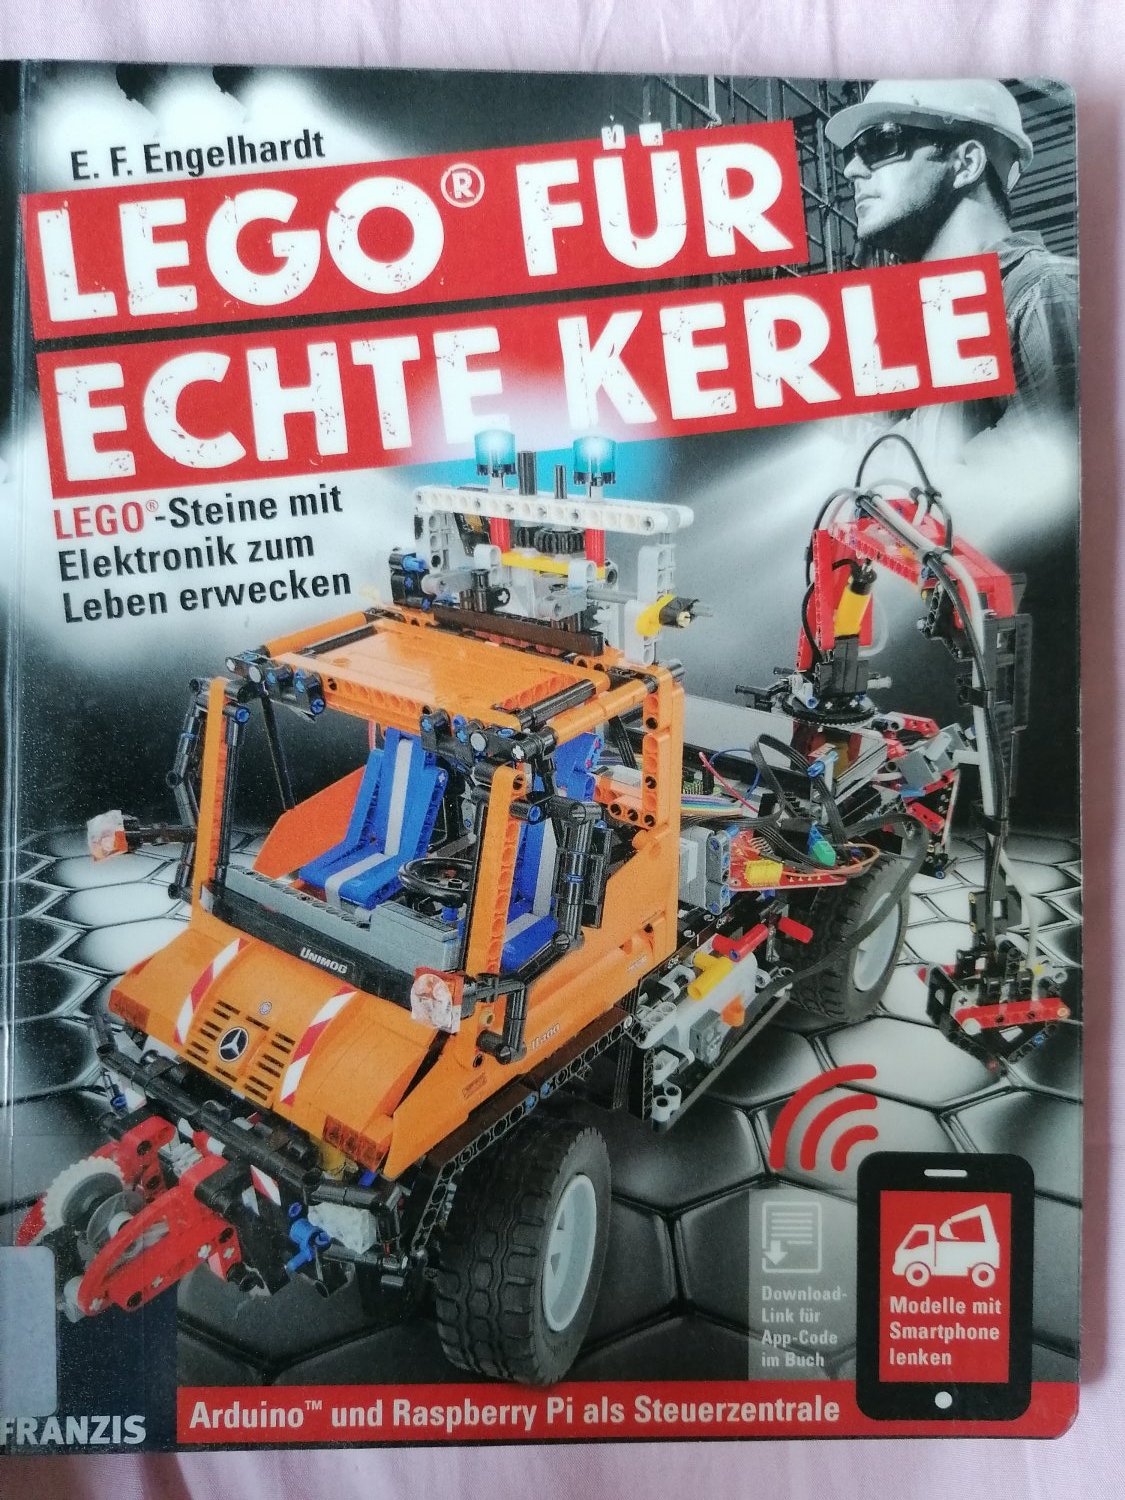 kul Cirkel i gang LEGO® für echte Kerle - Lego®-Steine mit Elektronik zum …“ (Engelhardt,  E.F) – Buch gebraucht kaufen – A02zZAY601ZZh